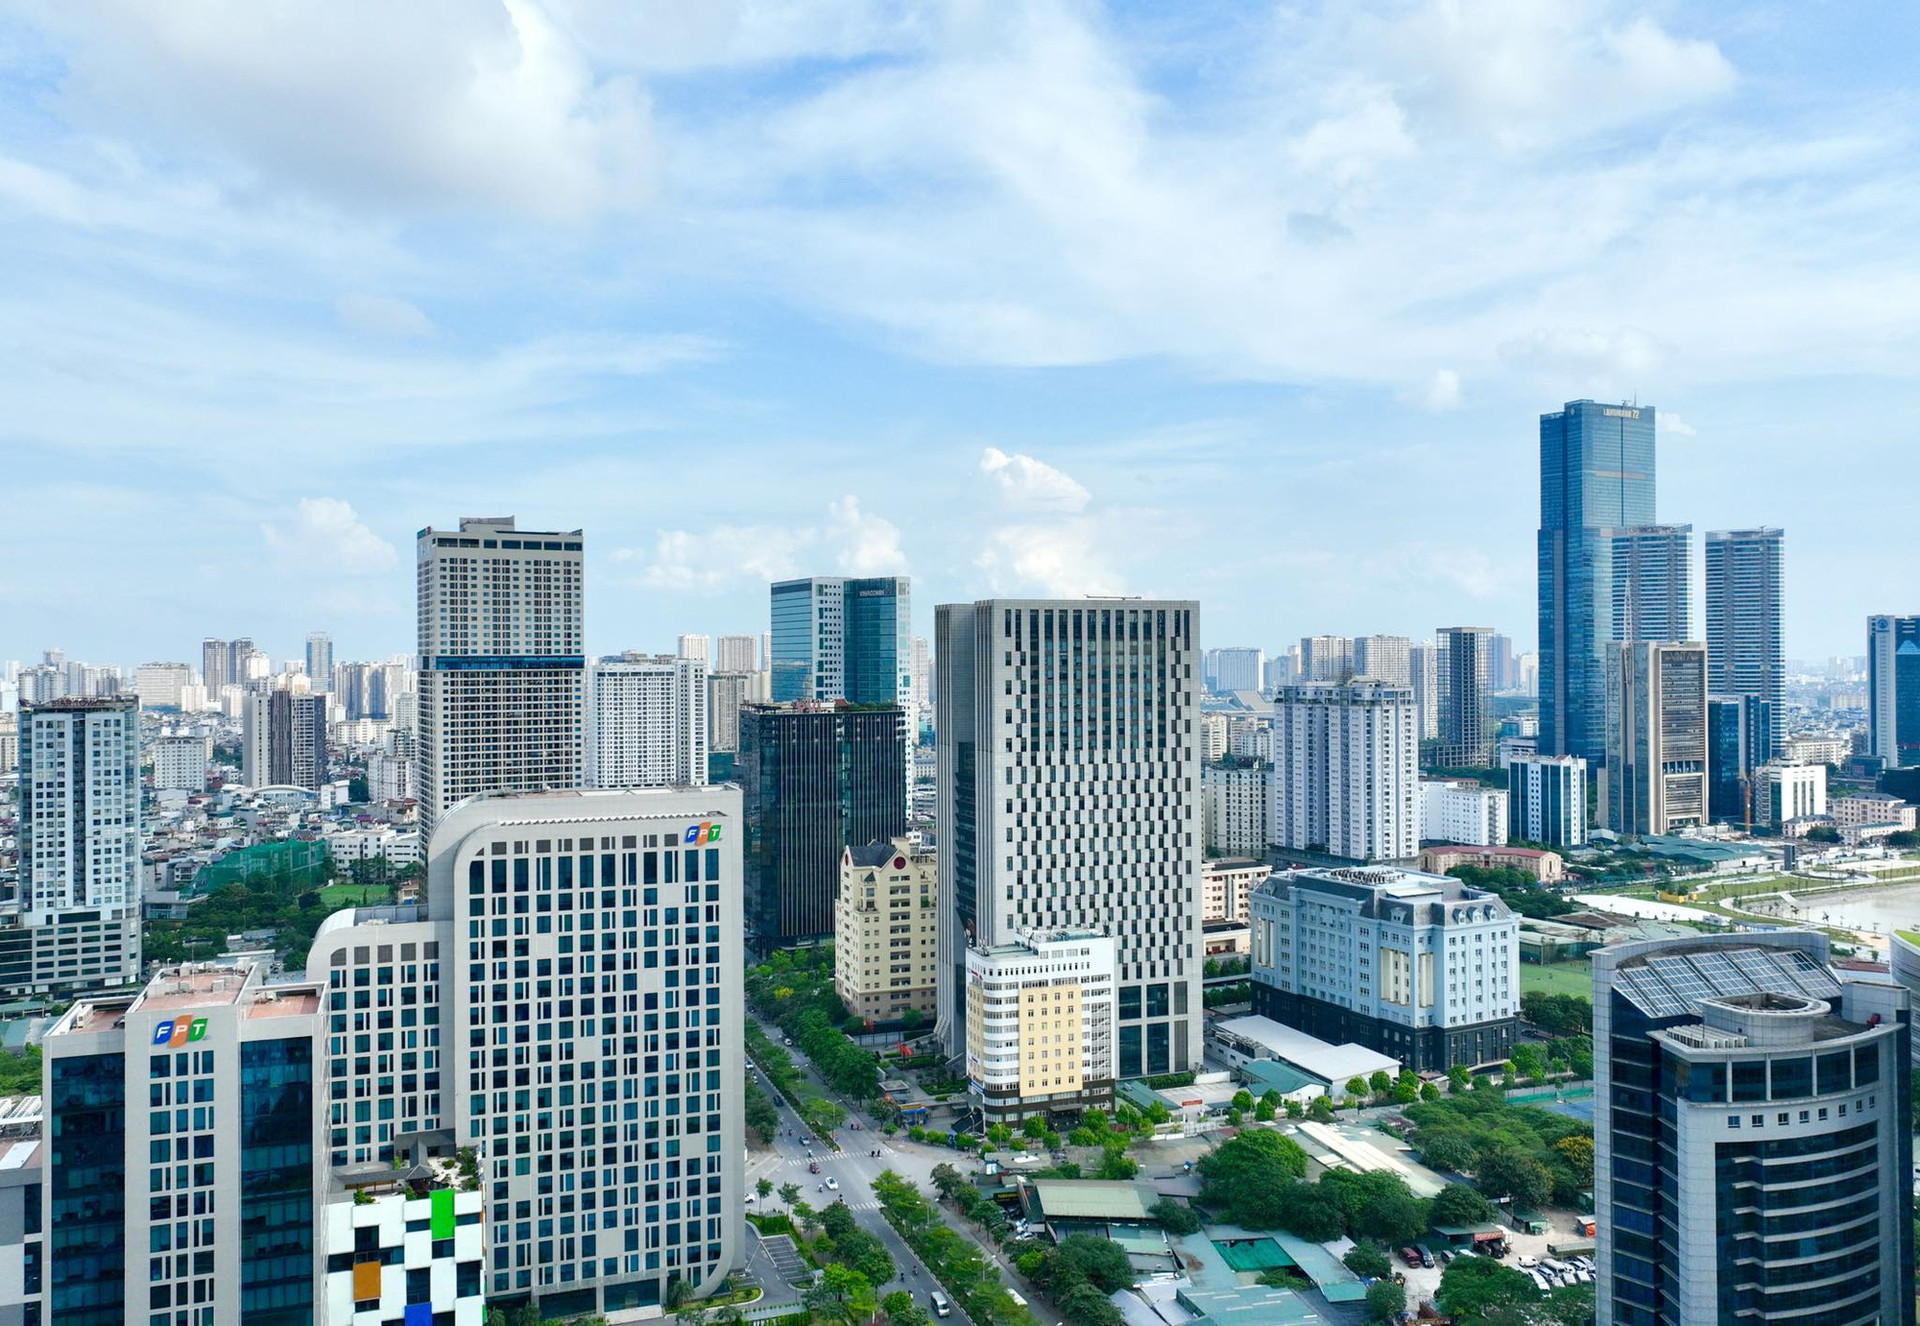 Thủ đô Hà Nội nhìn từ trên cao với những tòa nhà cao tầng hiện đại, trong đó có những căn hộ với giá lên tới vài triệu USD - Ảnh: NGUYỄN KHÁNH